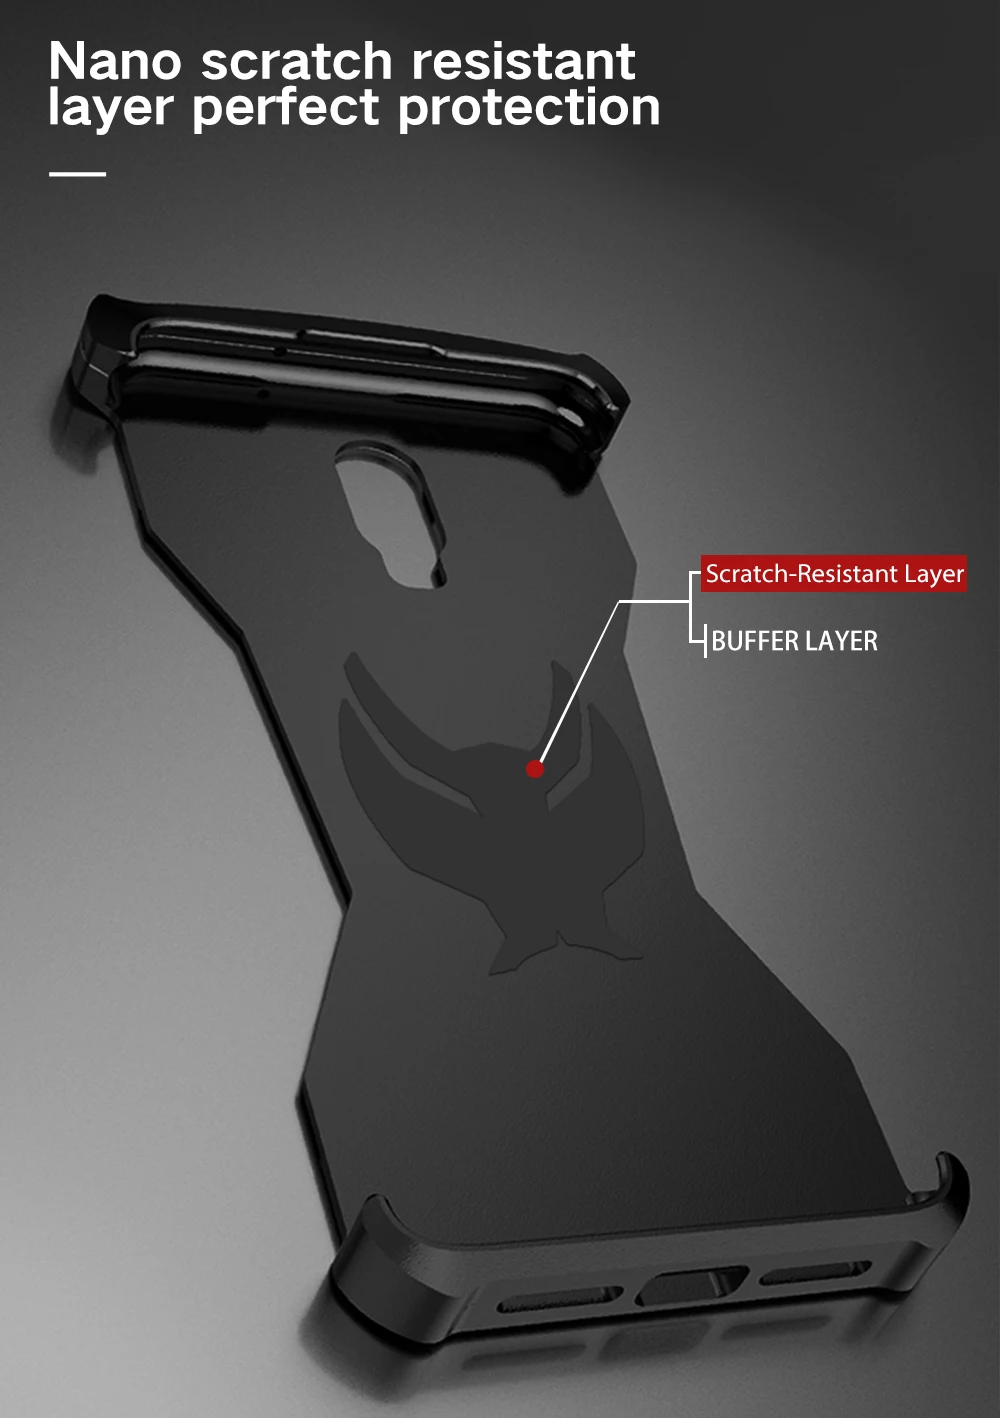 R-JUST, алюминиевый защитный Магнитный чехол с черной пантерой для Oneplus 6 T, чехол, Железный человек, защитный чехол для телефона, кожаная сумка